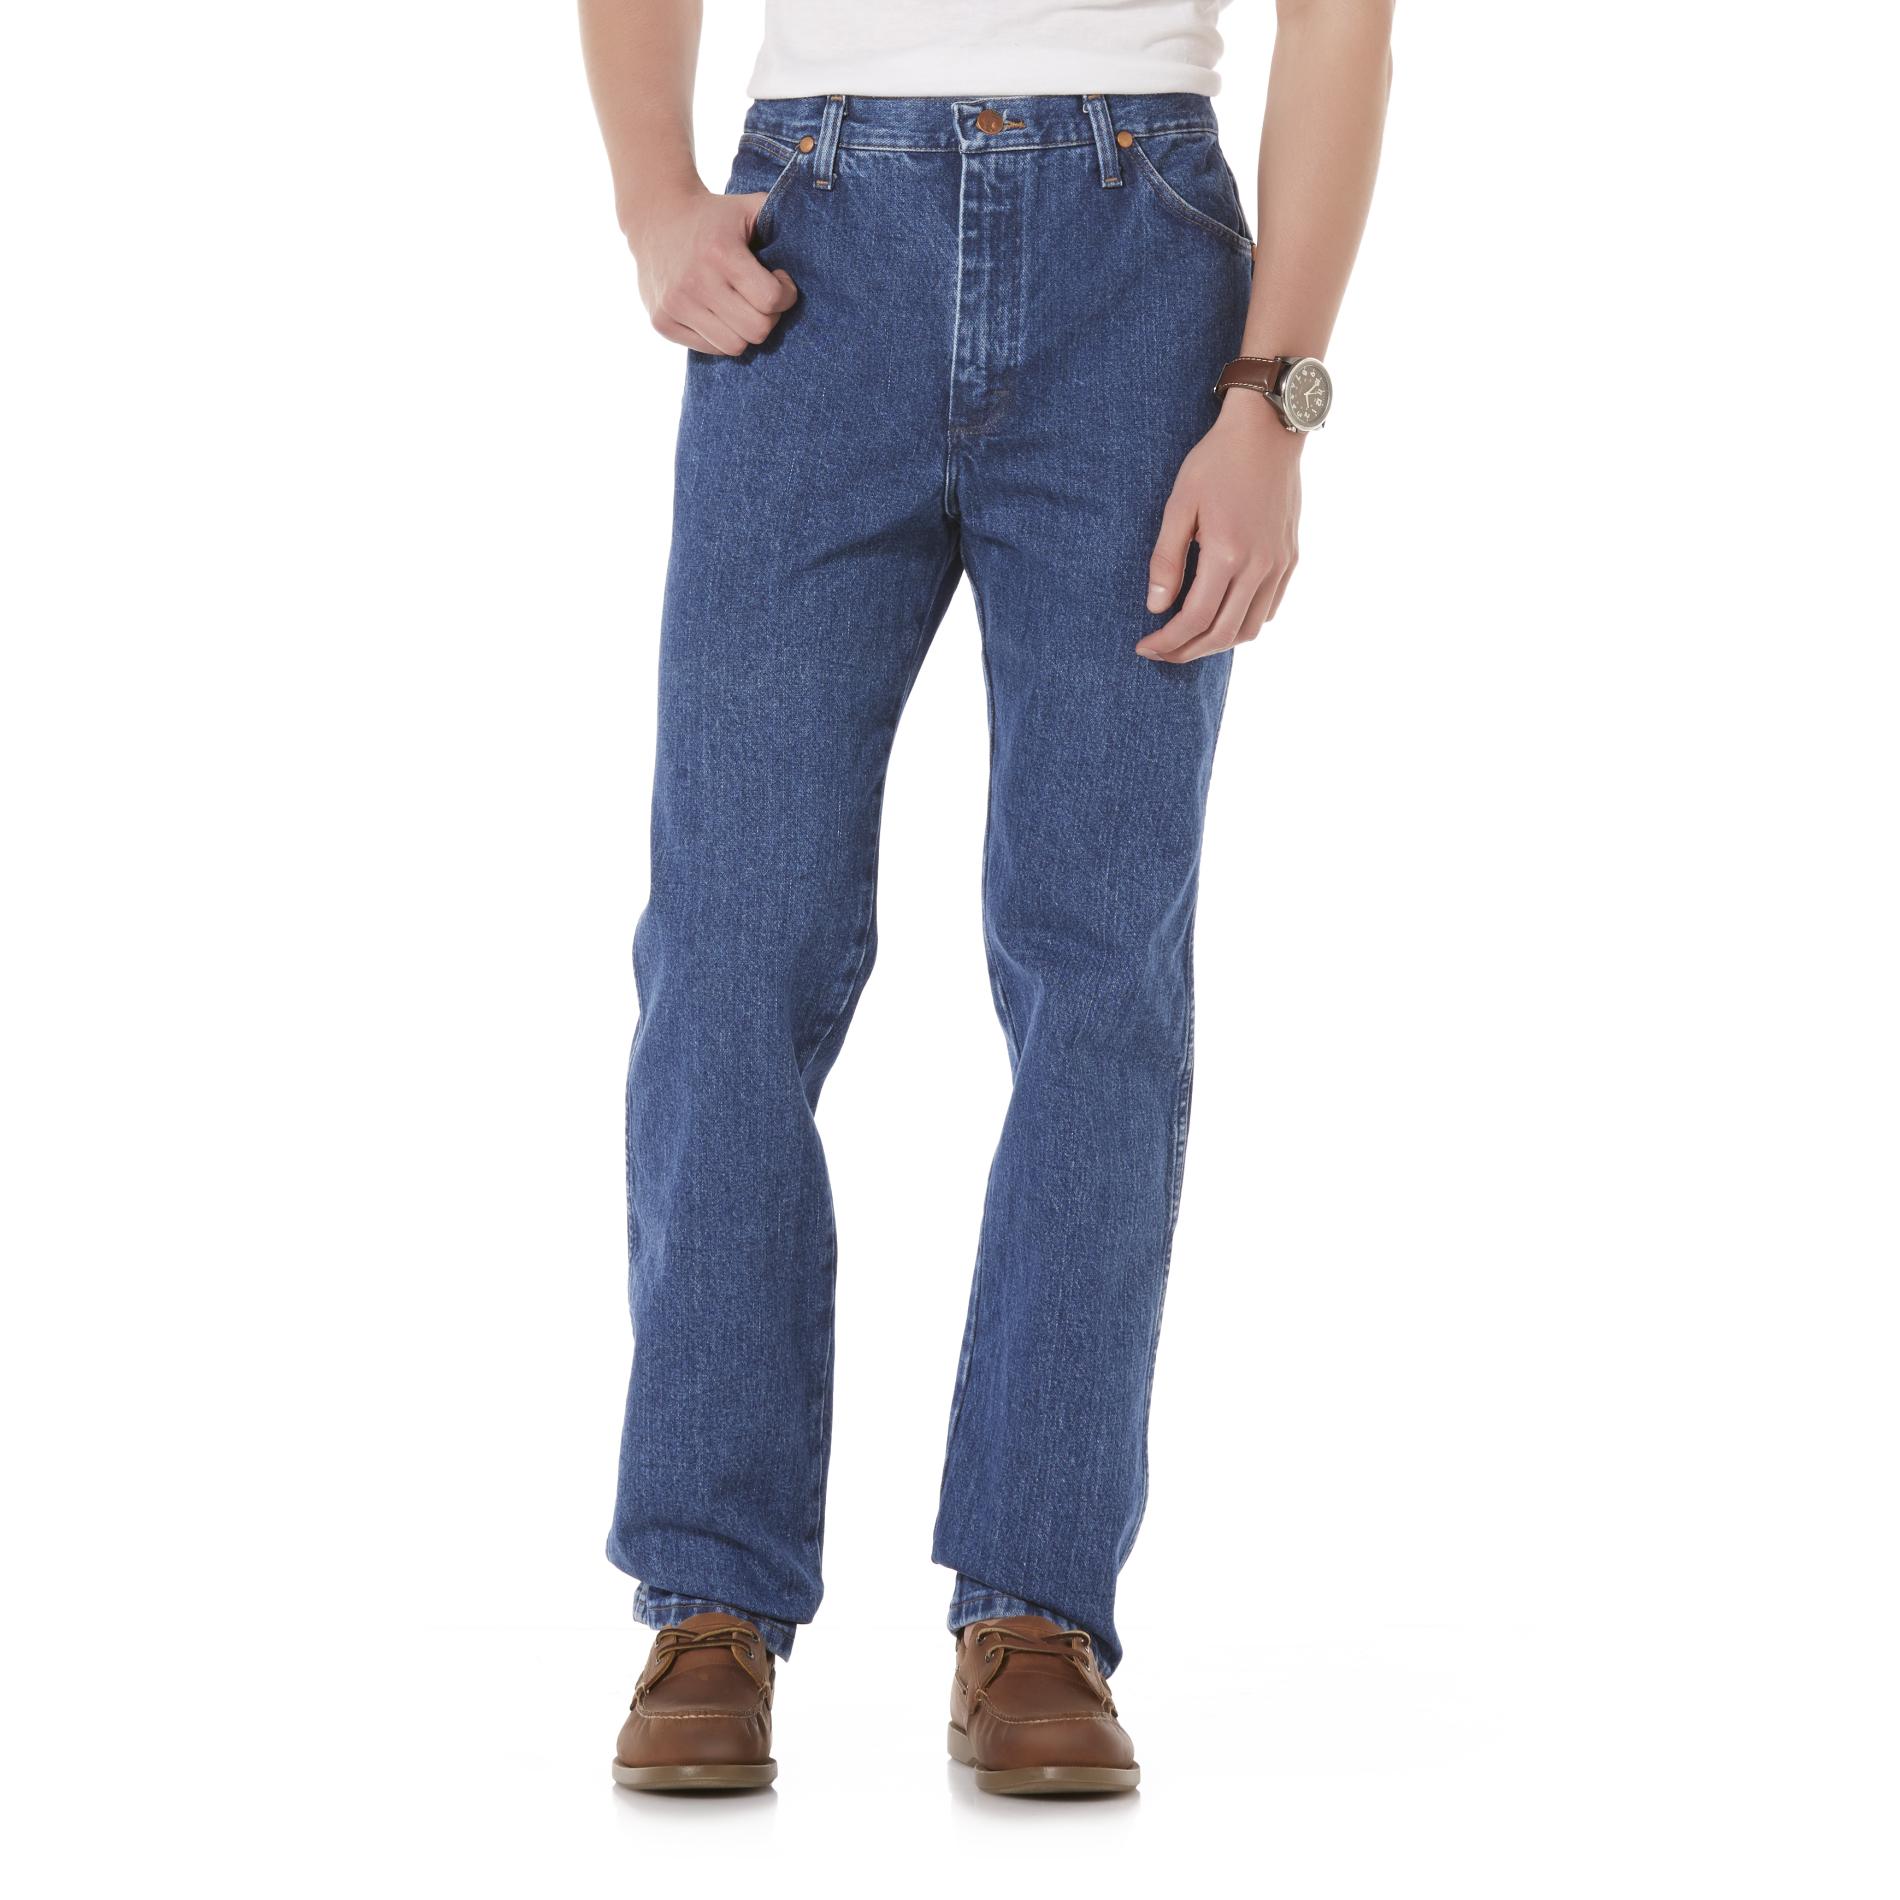 Wrangler Men's Cowboy Cut Jeans - Slim Fit